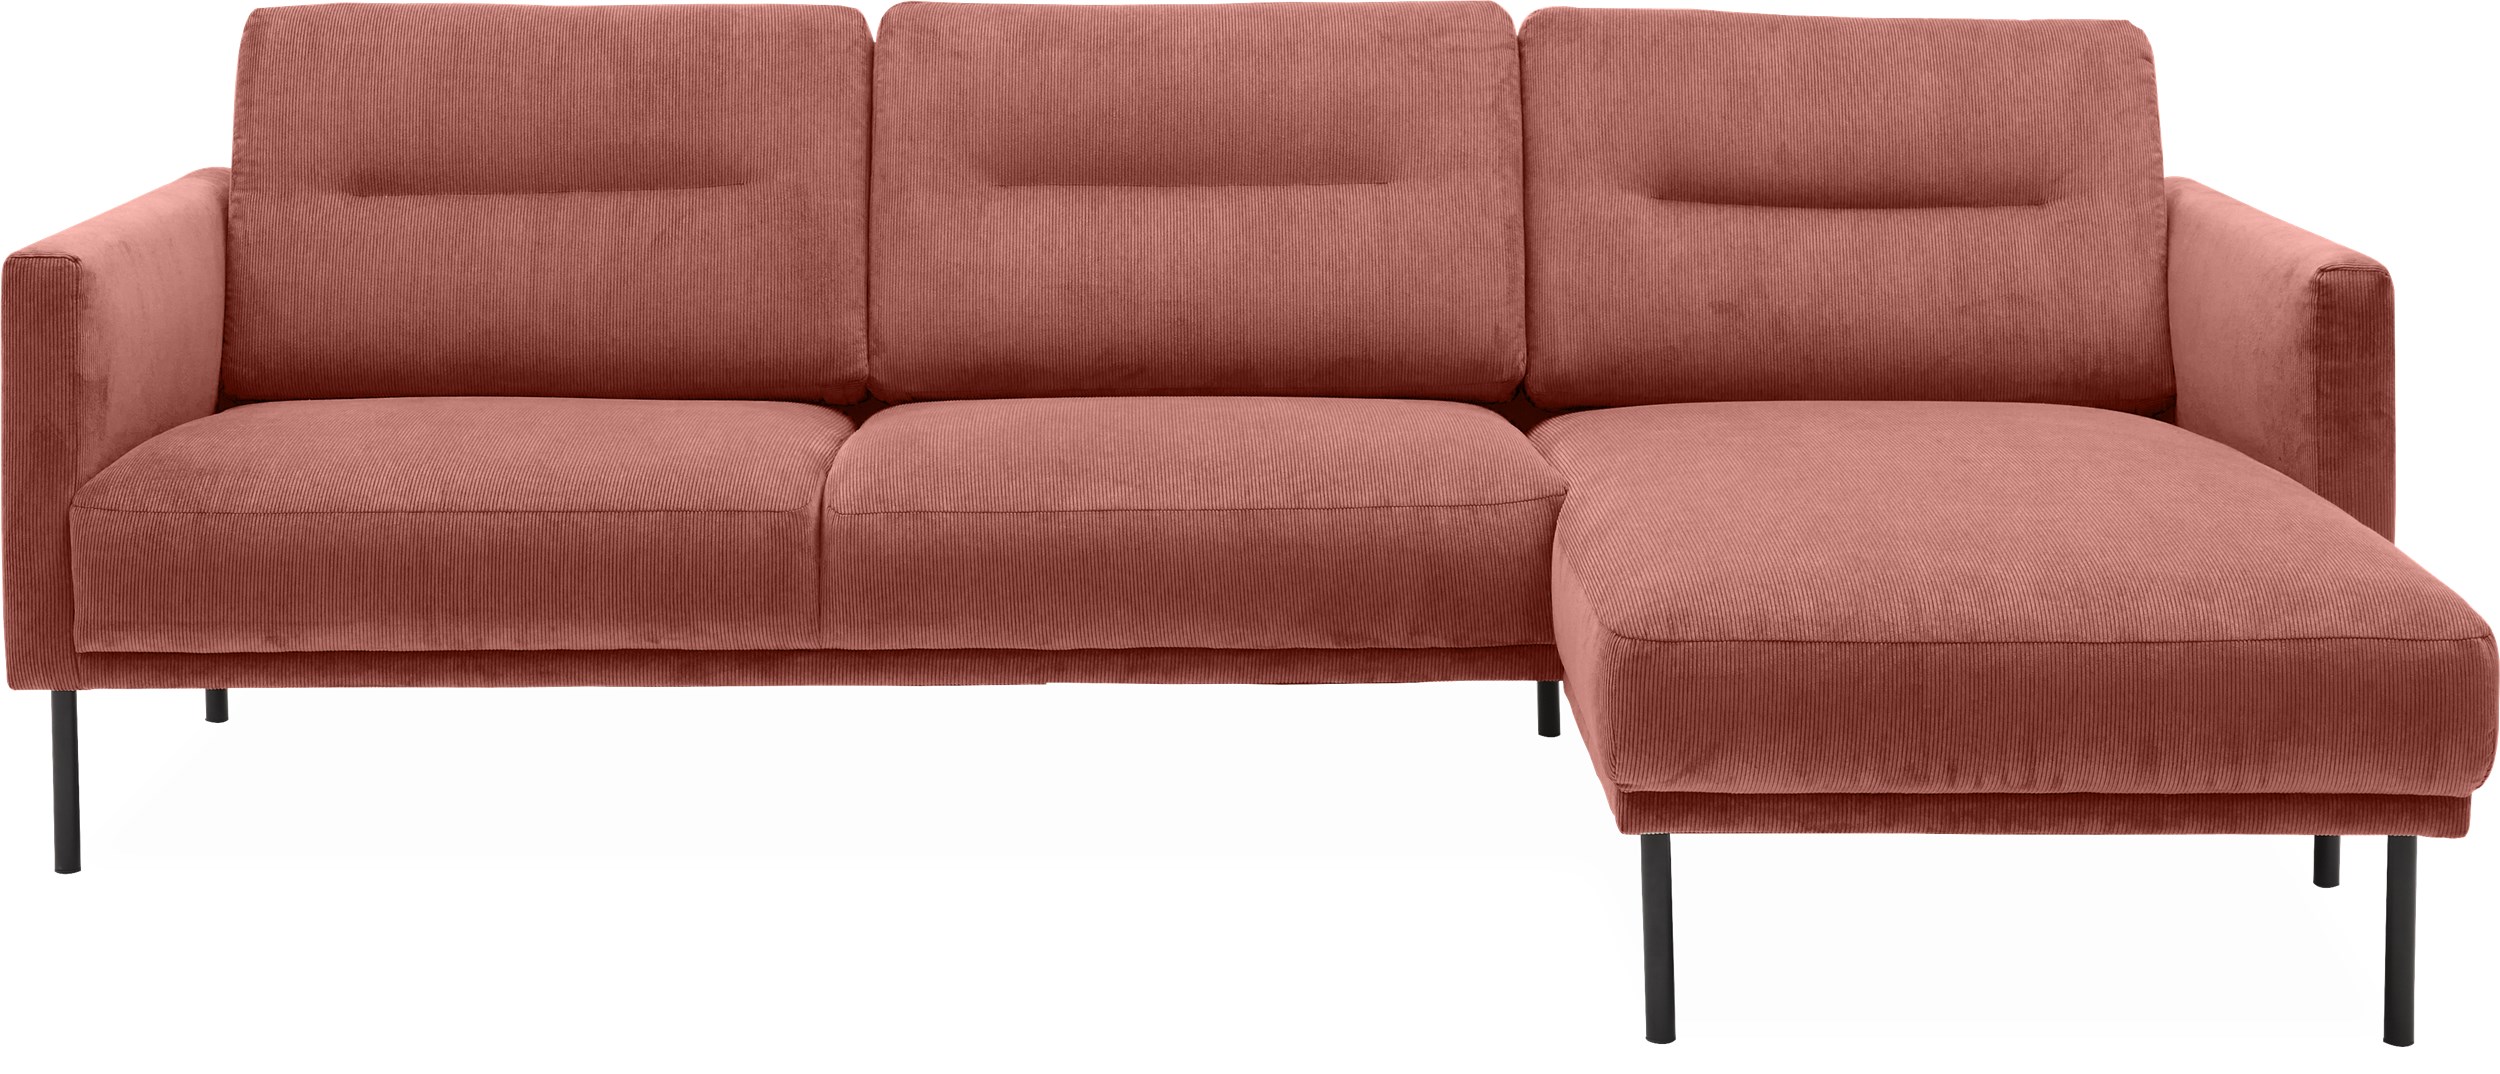 Larvik højrevendt sofa med chaiselong - Wave 110 Ginger stof og ben i sortlakeret metal